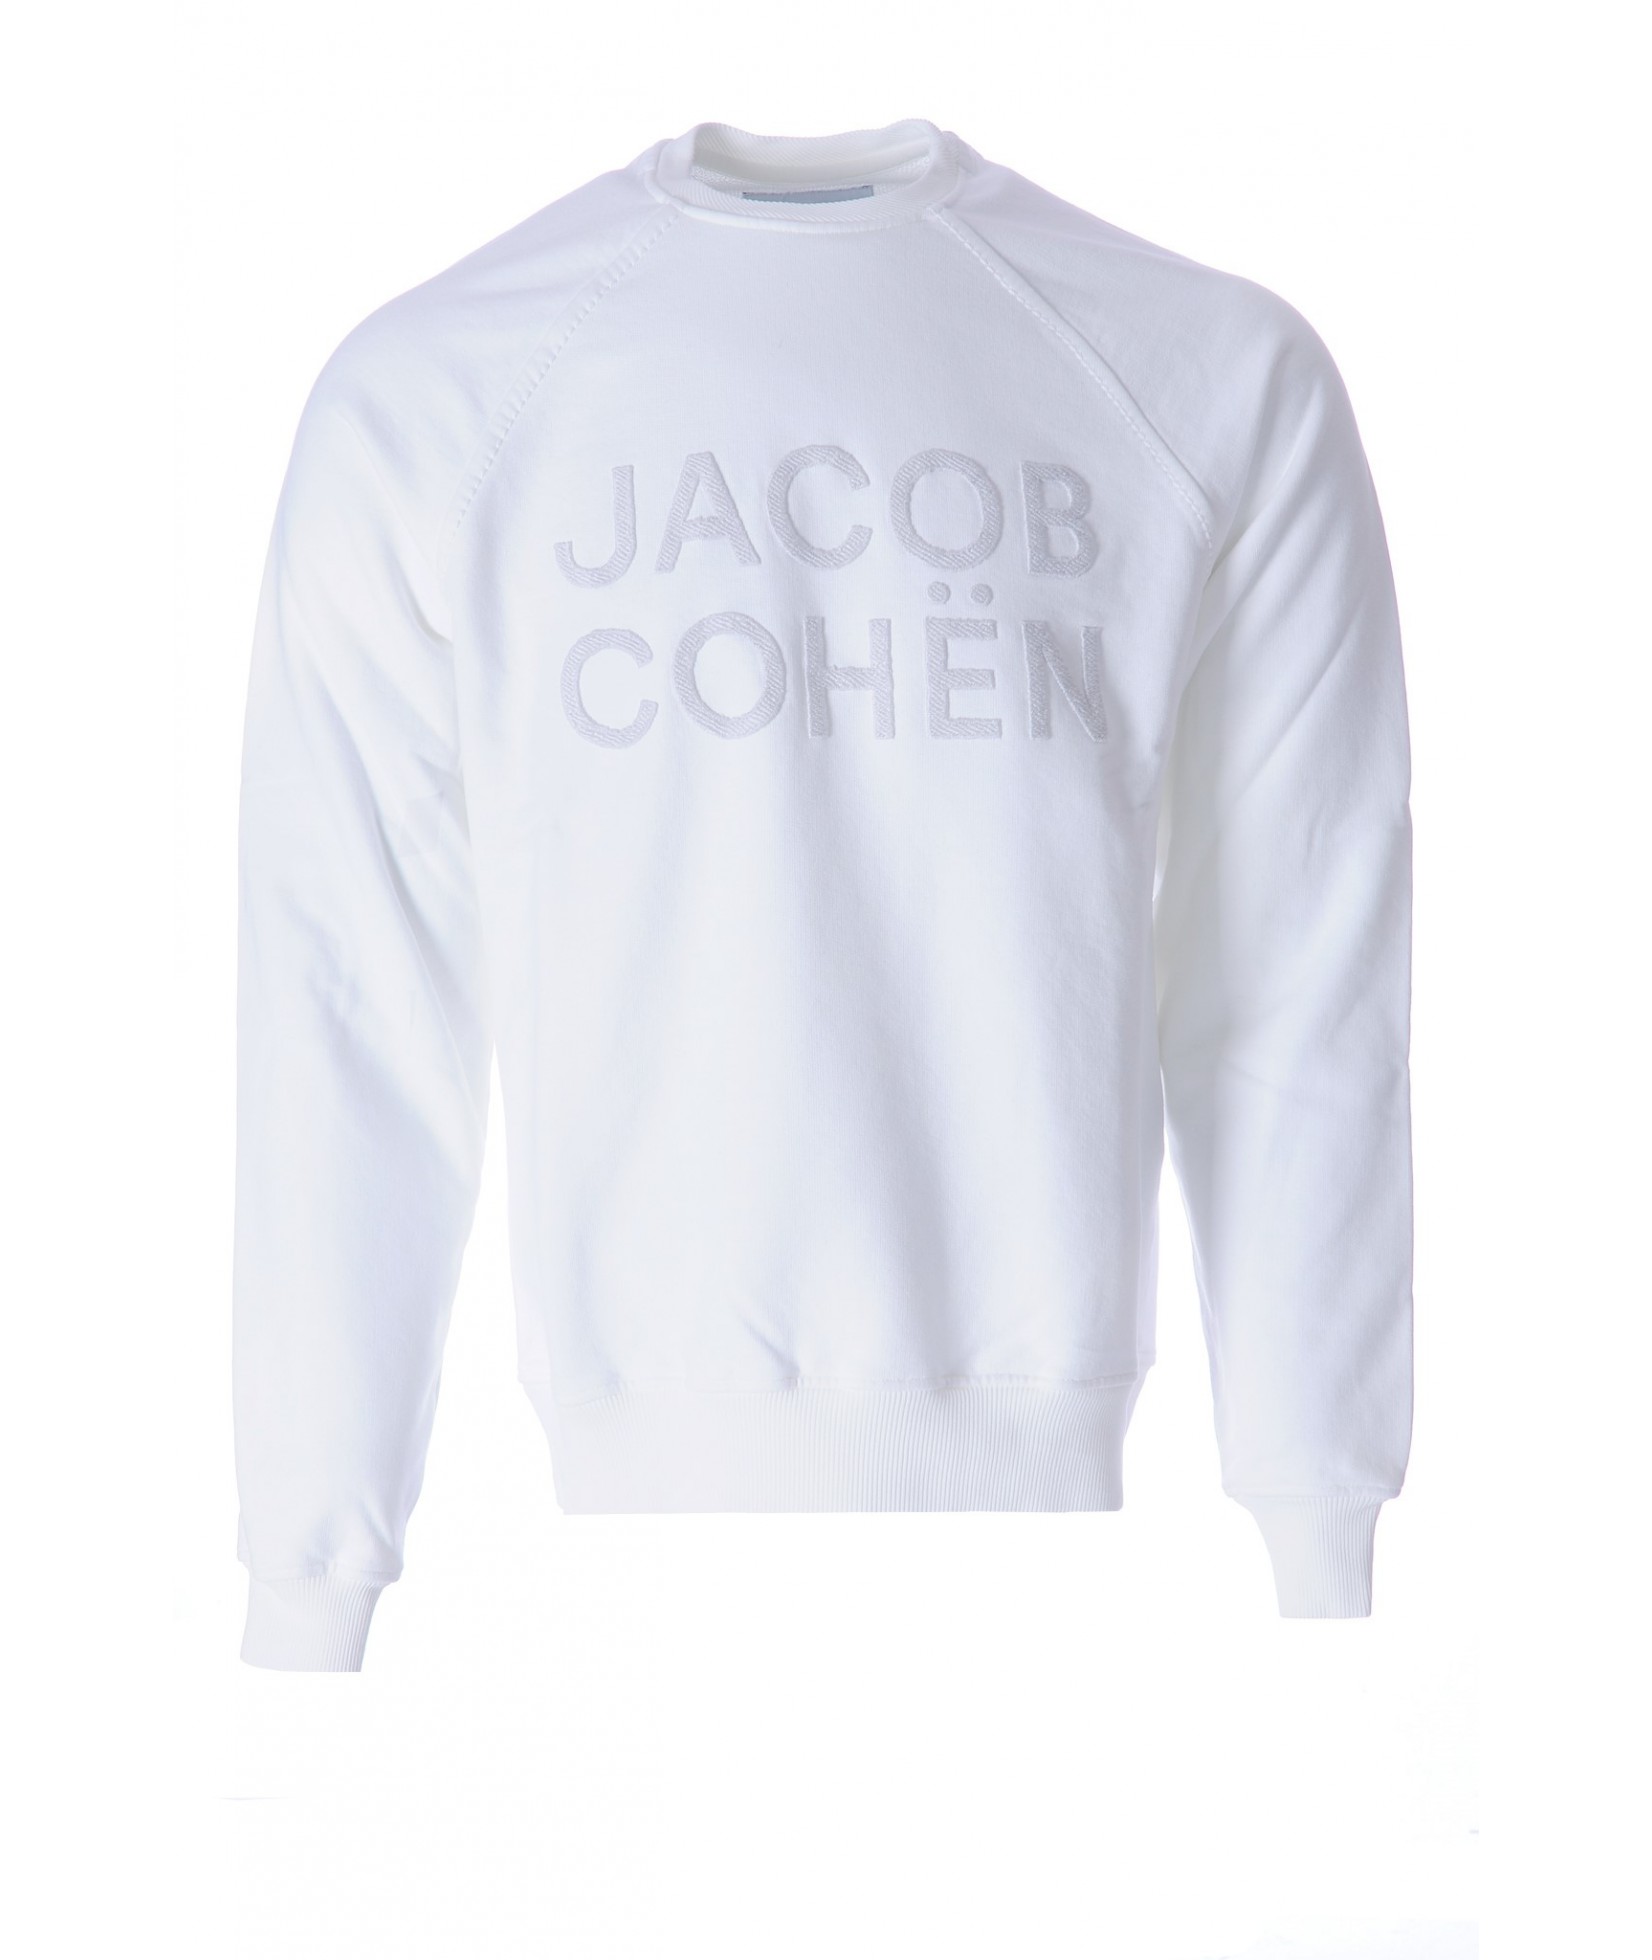 Jacob Cohën sweater white (34846)